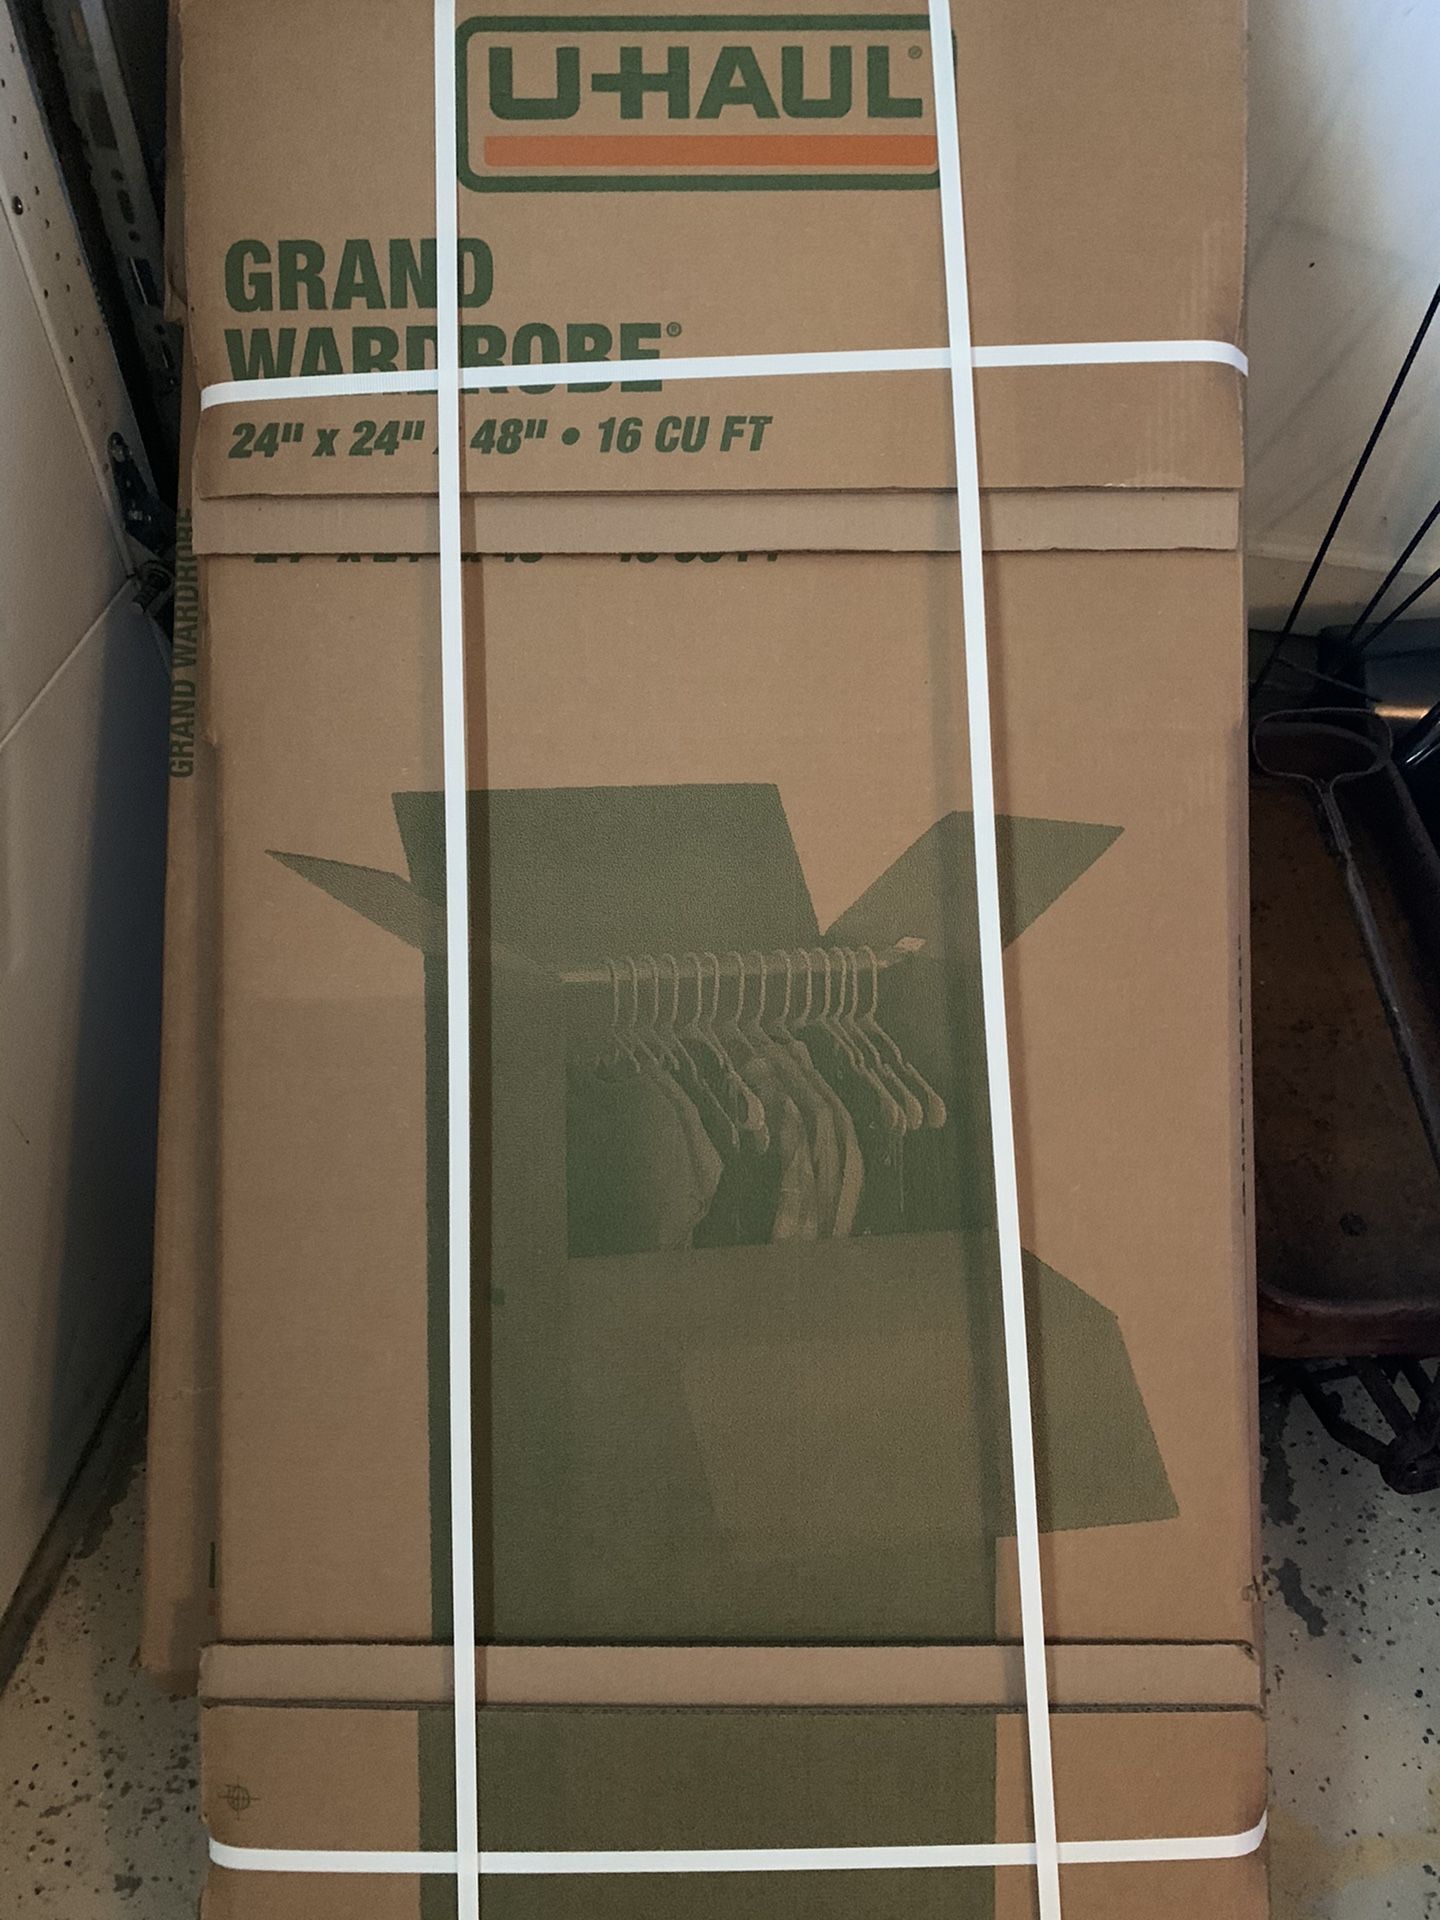 UHaul Grand Wardrobe Boxes